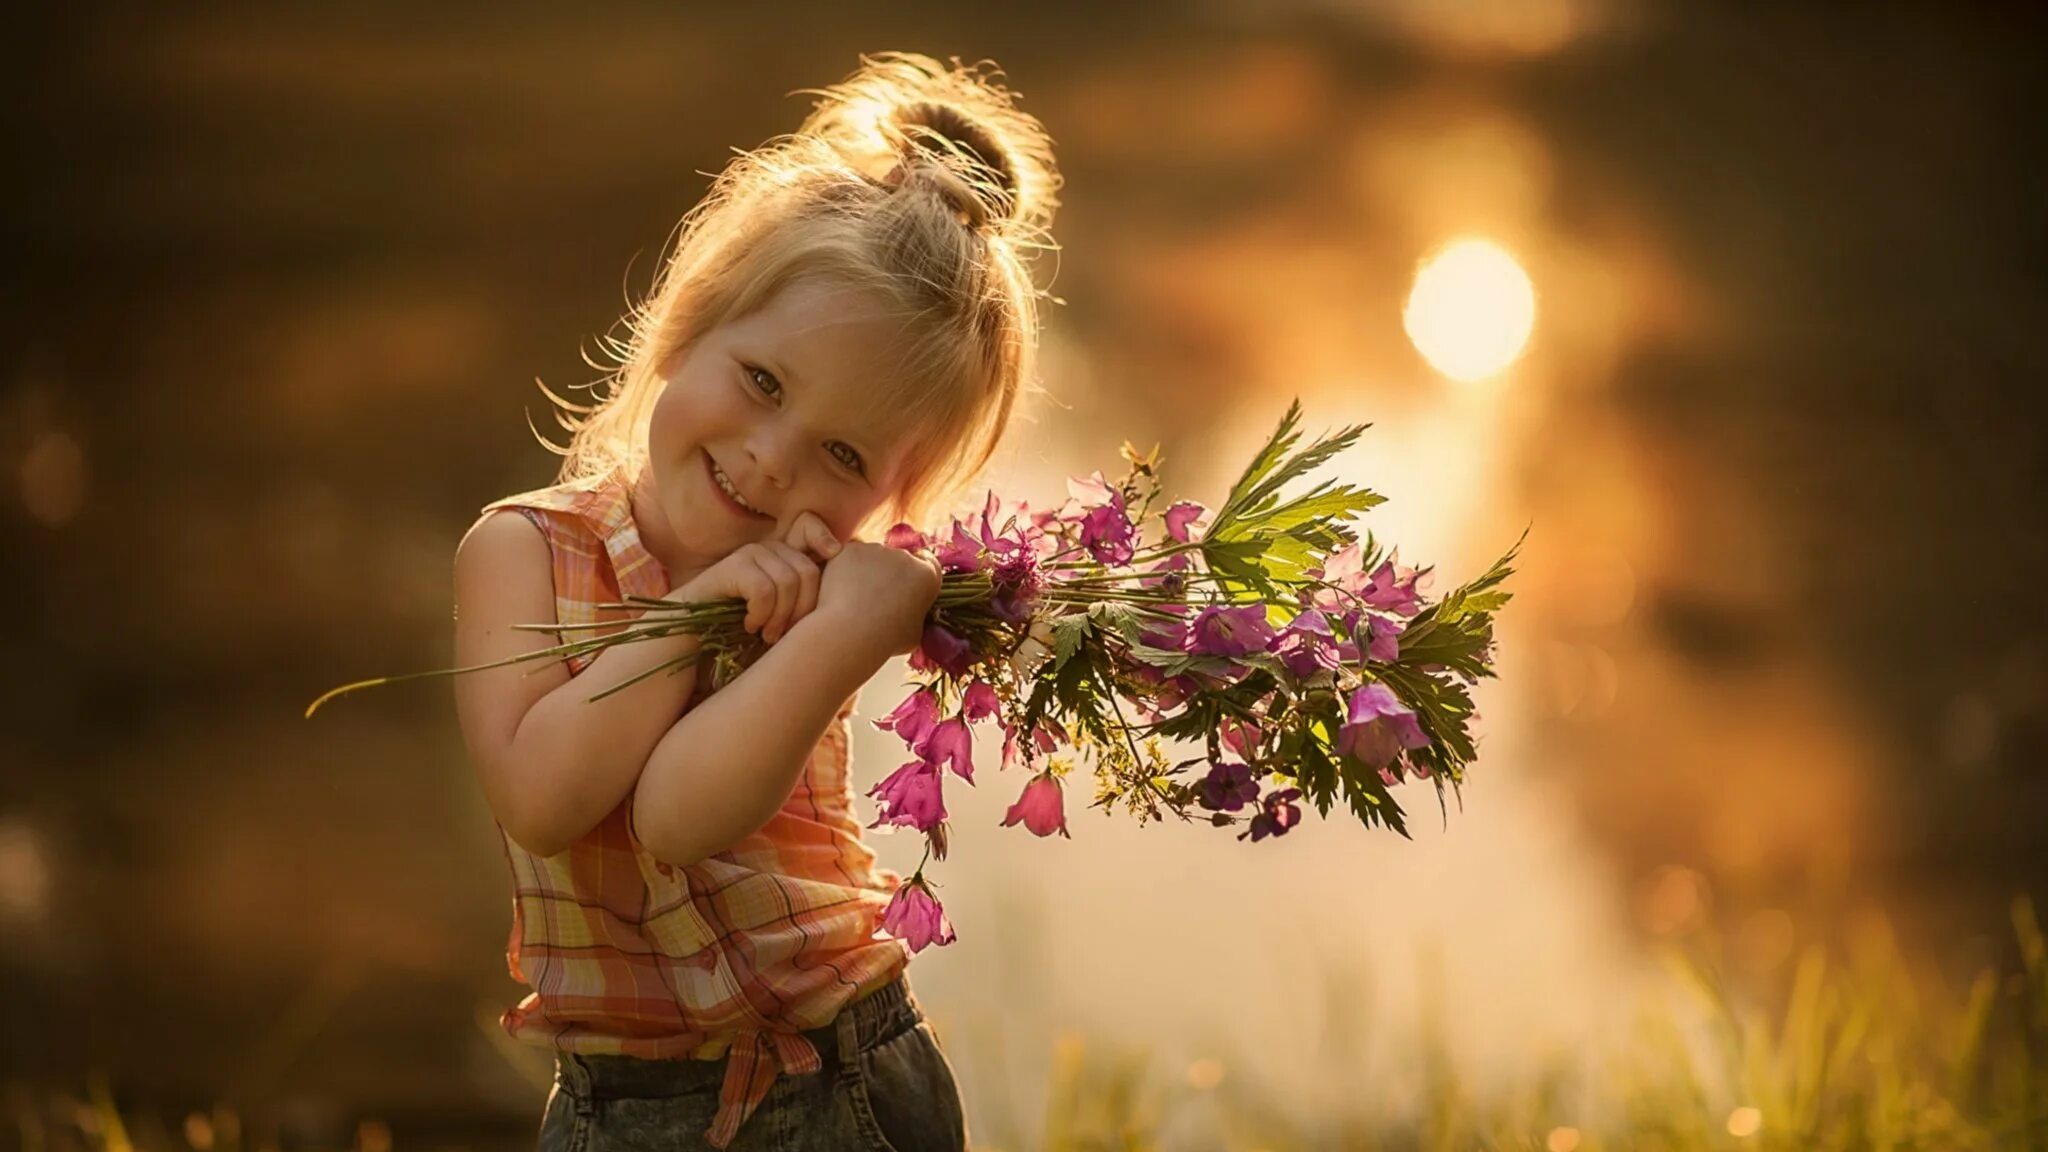 Живите в радости и добре. Дети радуются. Доброта радость. Девочка с цветами. Счастливый ребенок.